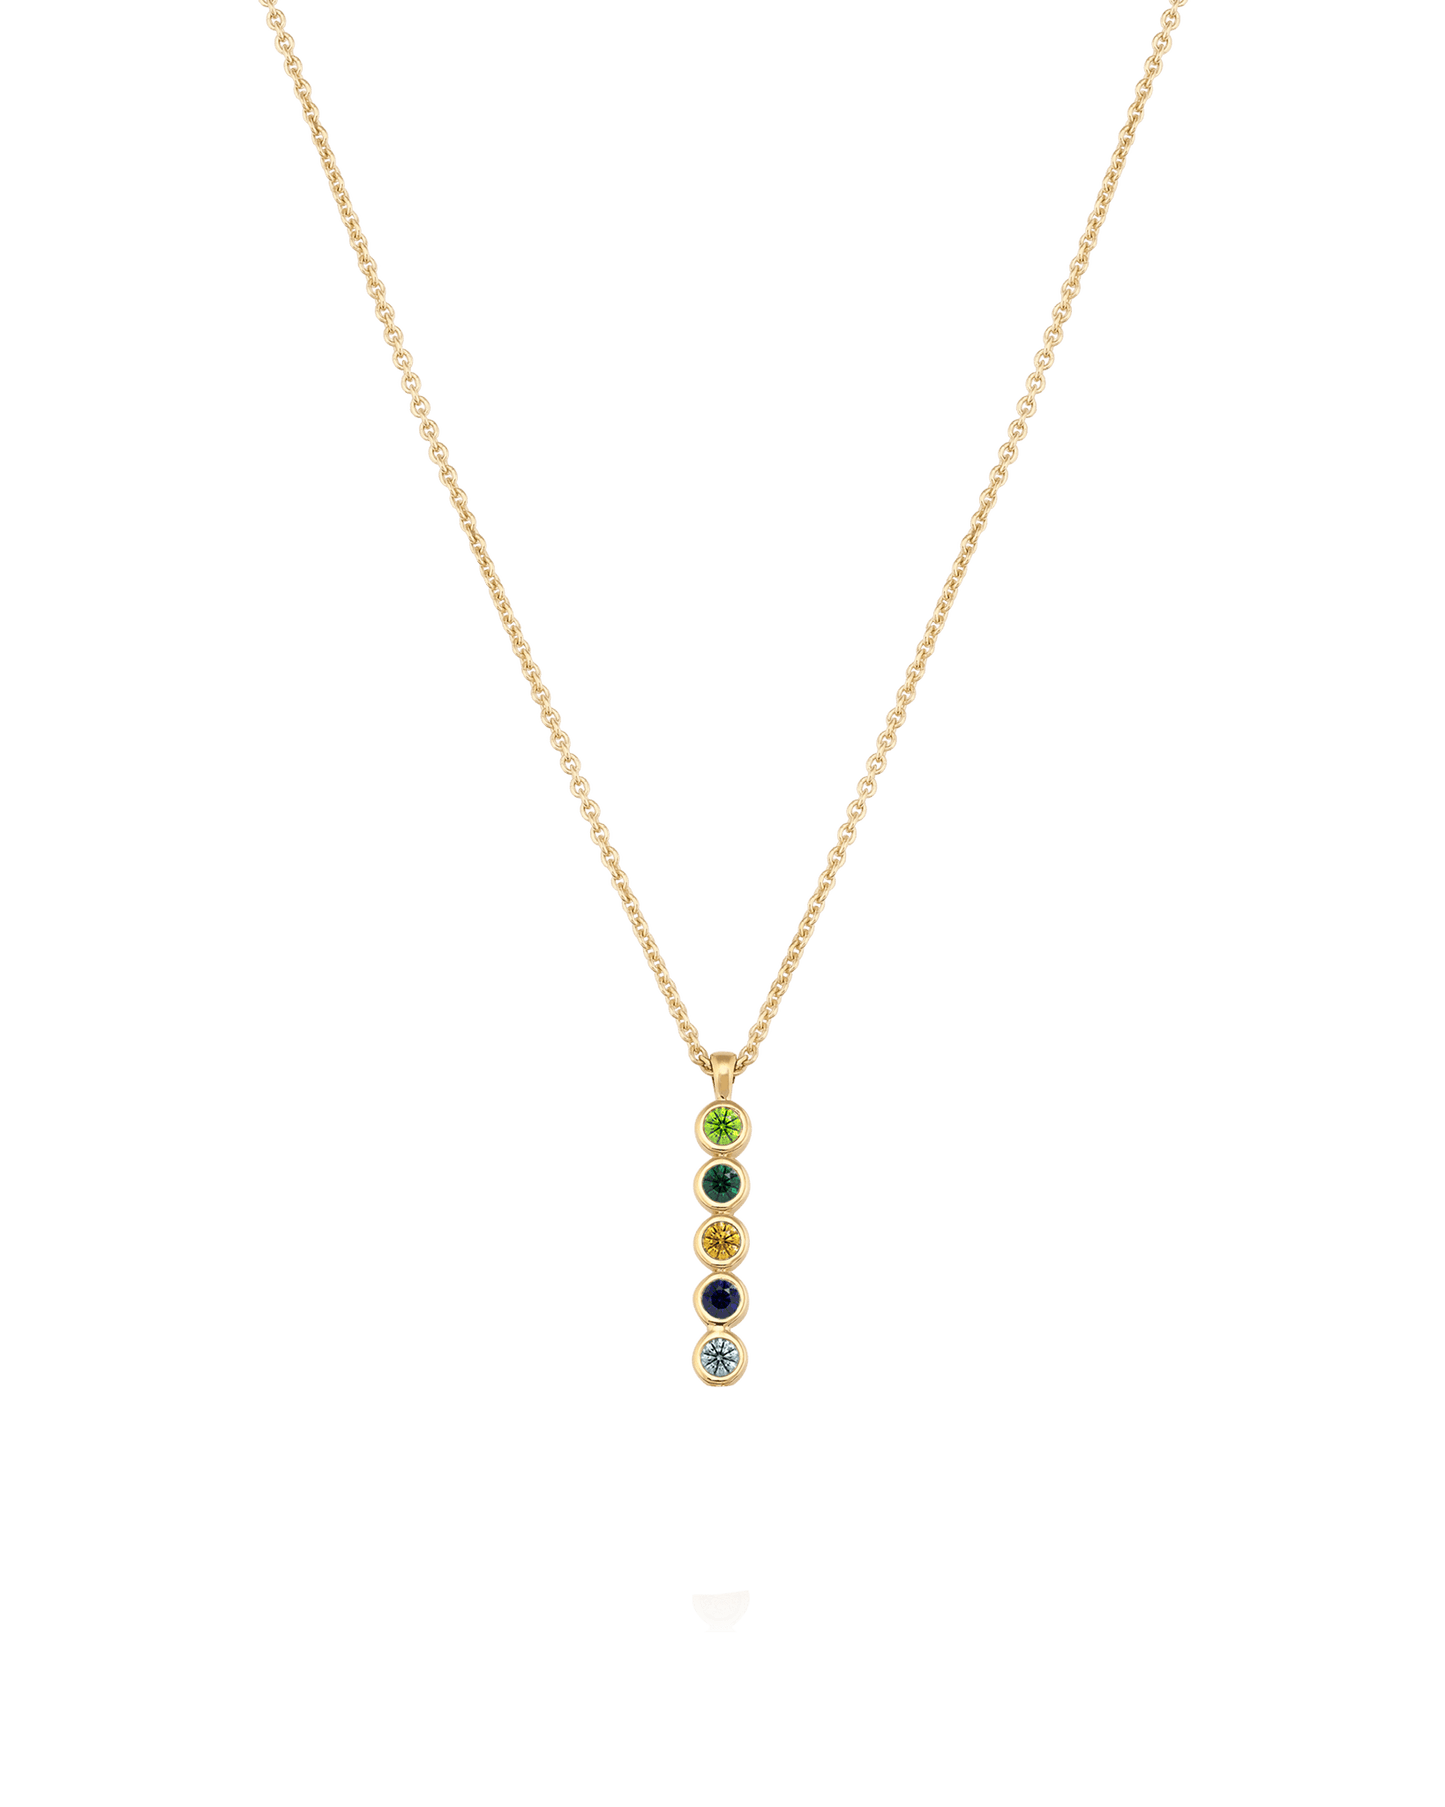 Birthstone Bar Chain Necklace - 18K Gold Vermeil Necklaces Gold Vermeil 1 Birthstone Small - 16" 